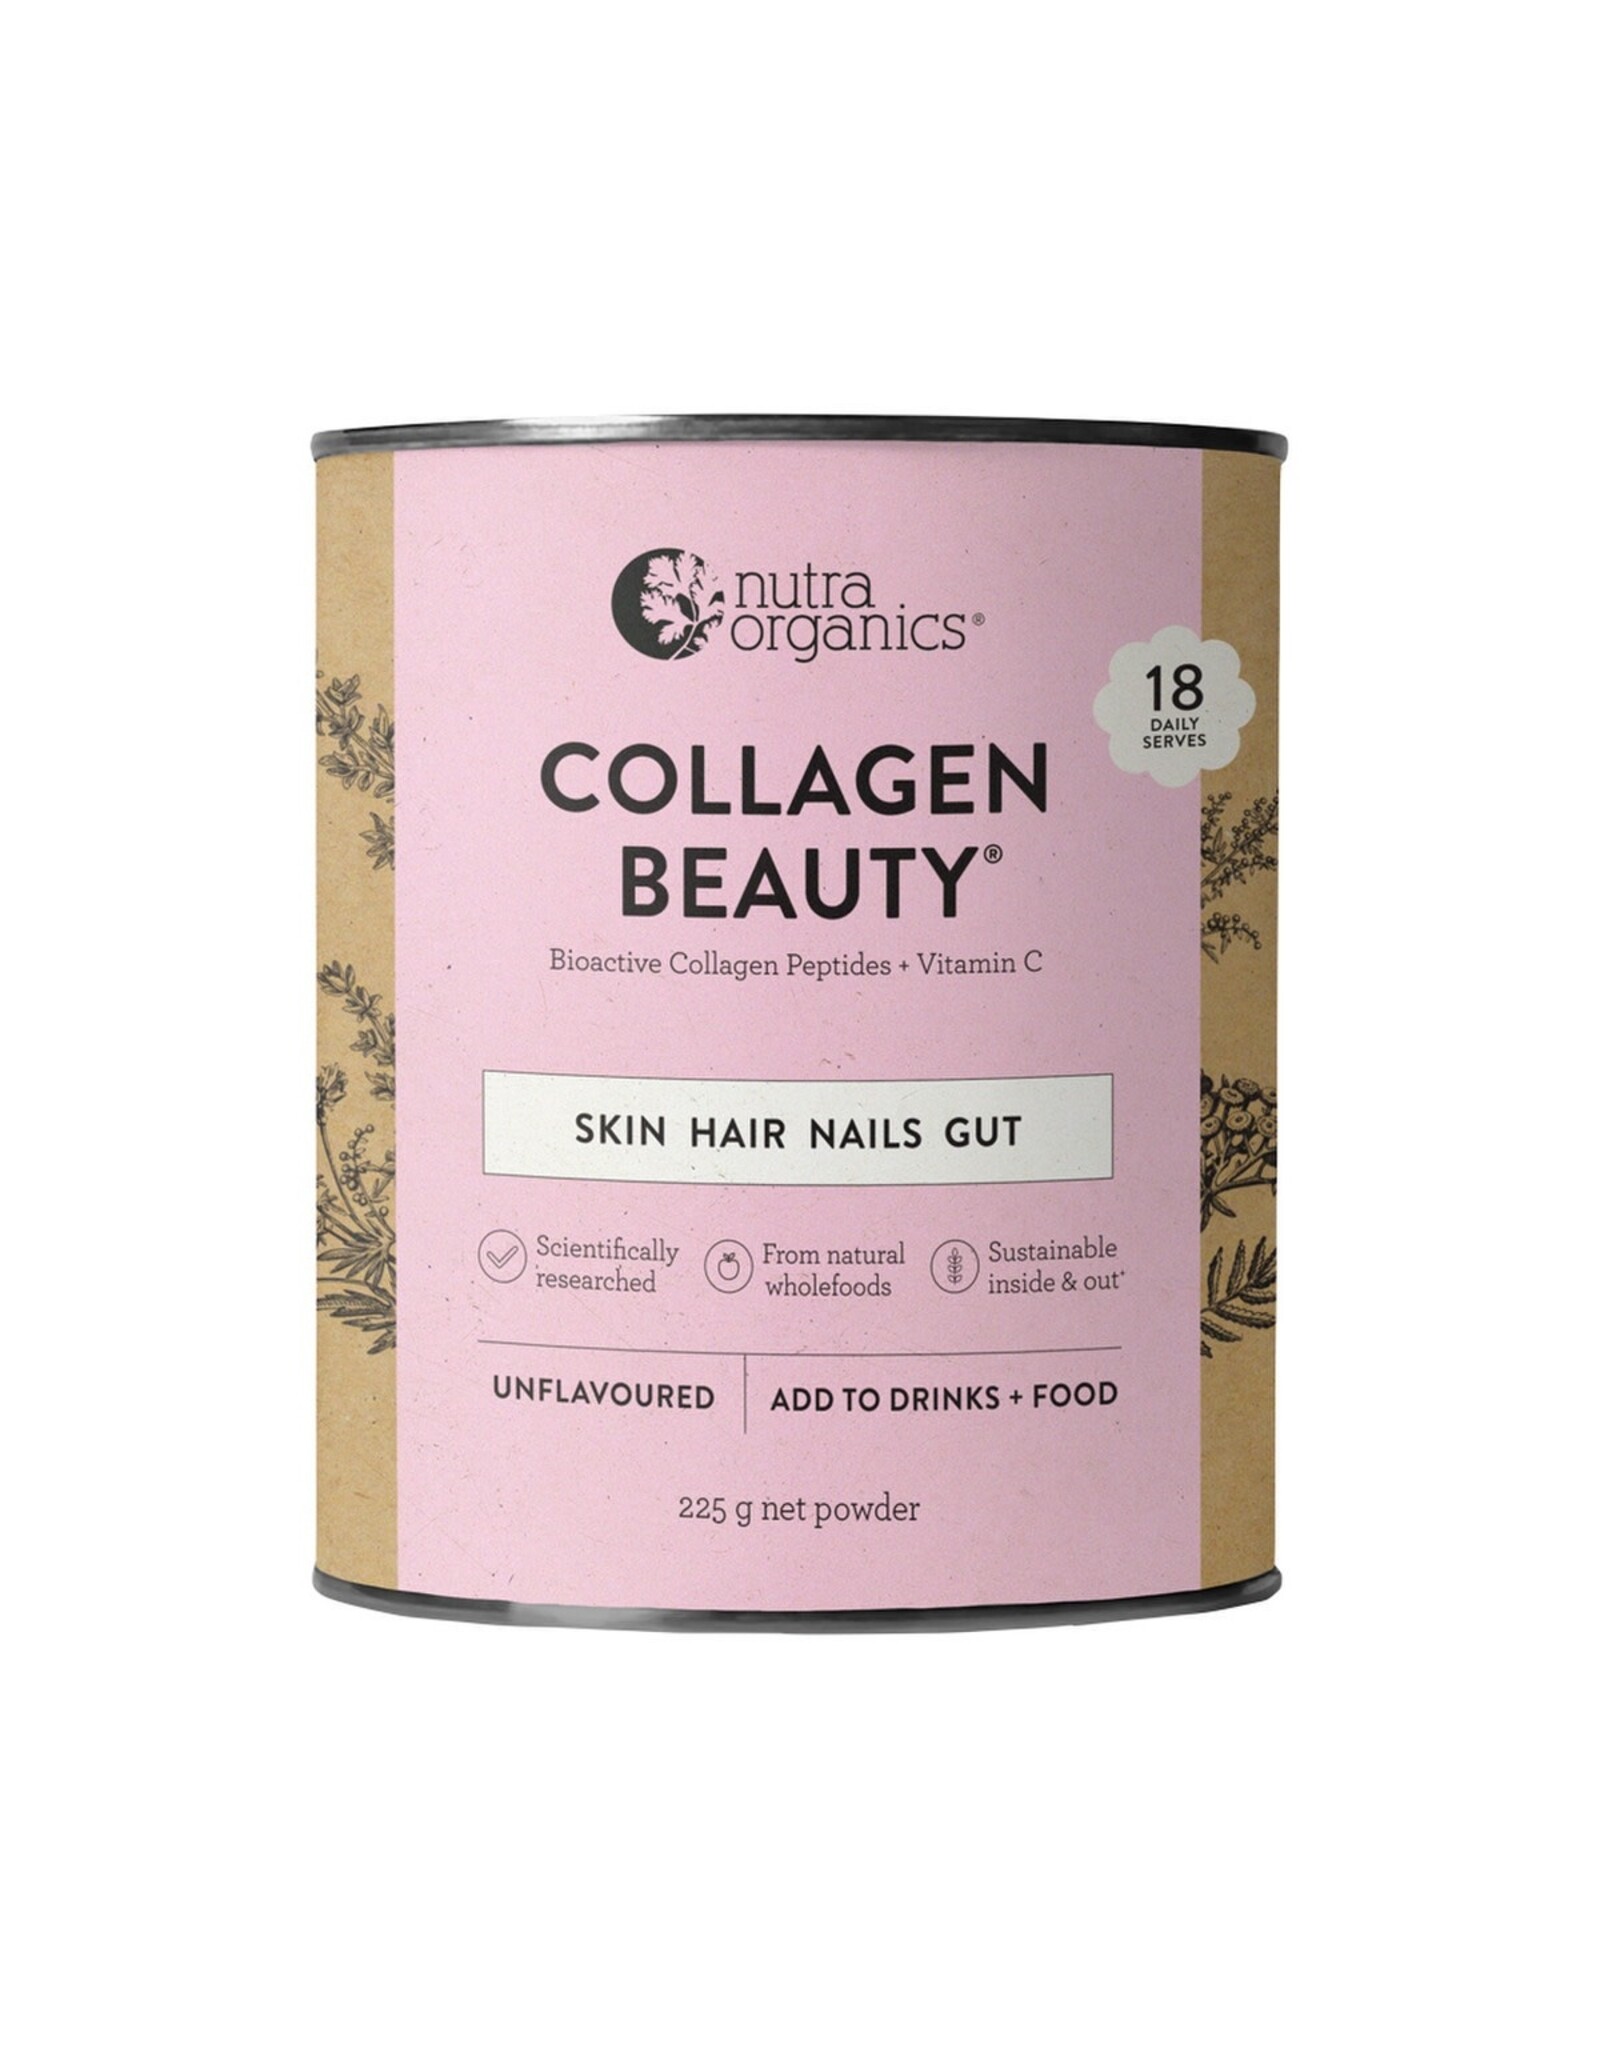 NutraOrganics Collagen Beauty Bioactive Collagen Peptides + Vitamin C Unflavoured